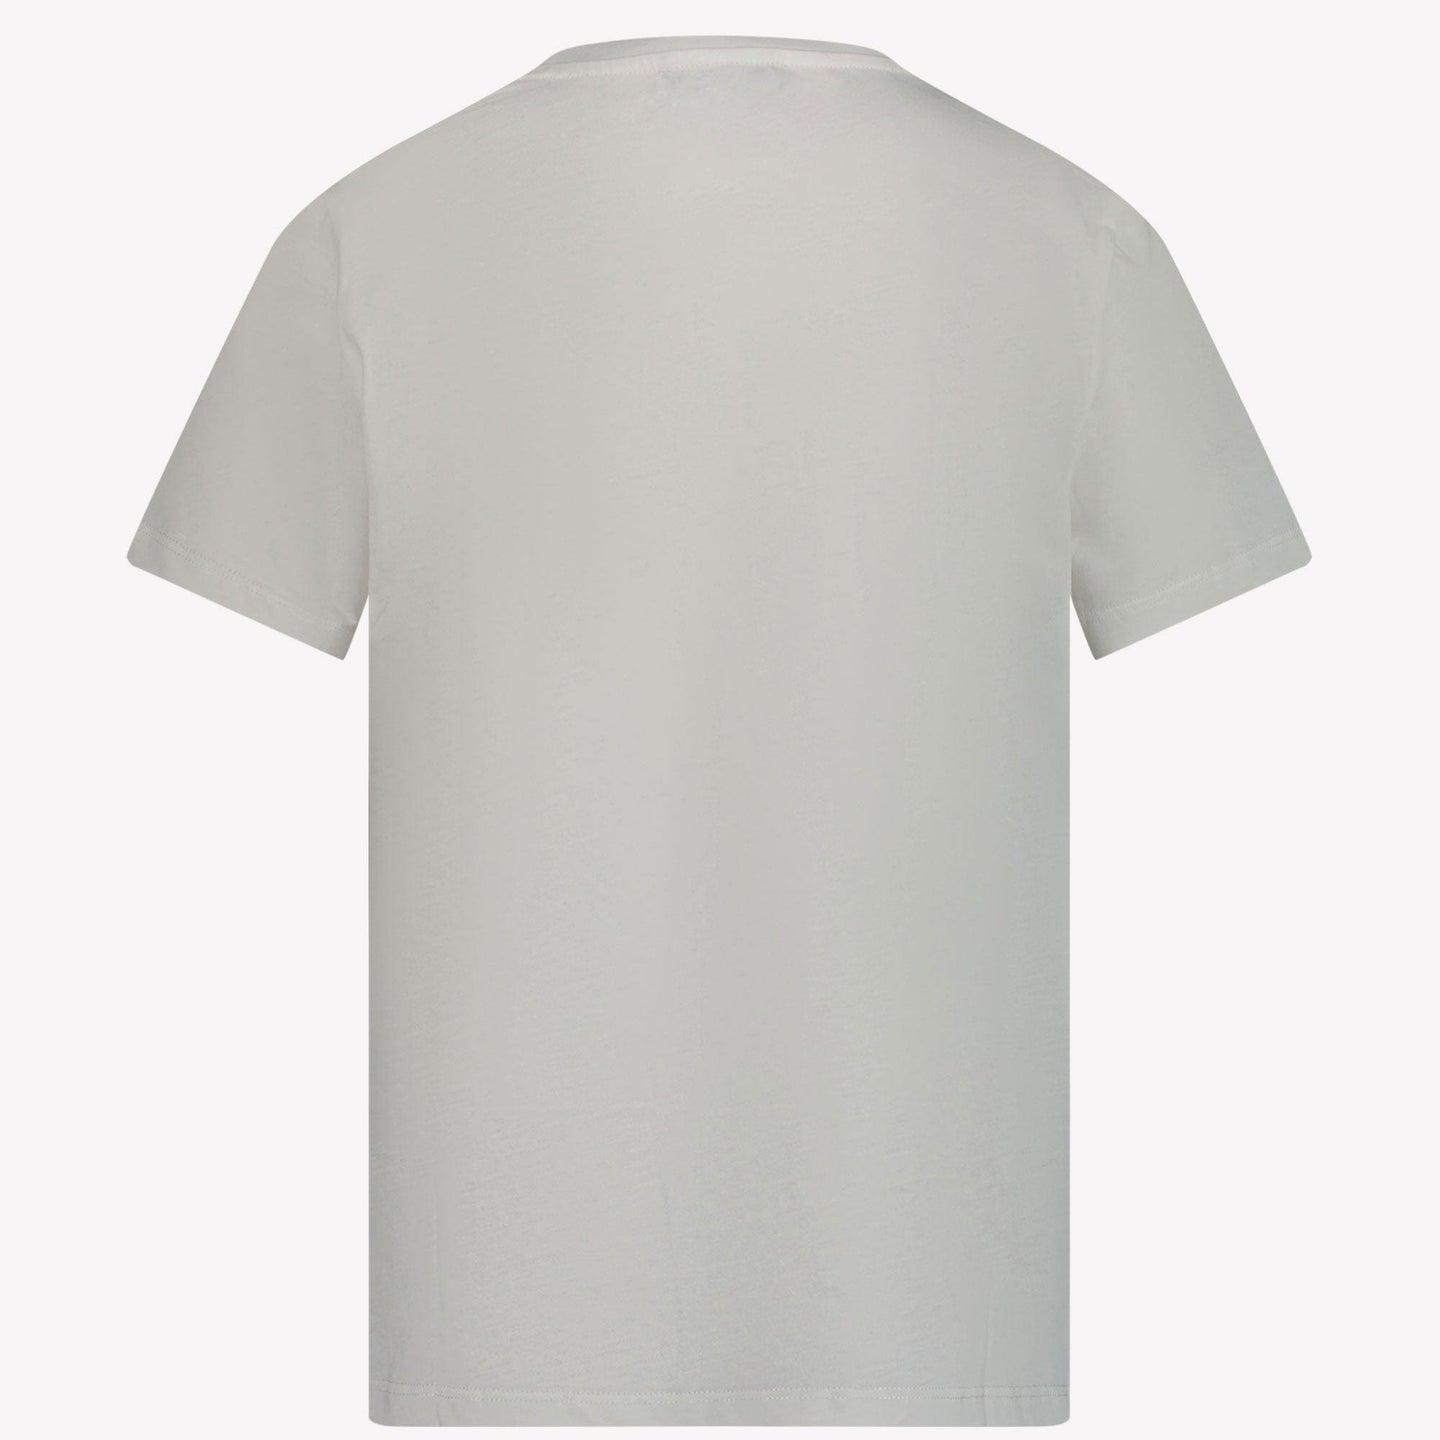 Versace Kinder Unisex T-shirt Wit 4Y